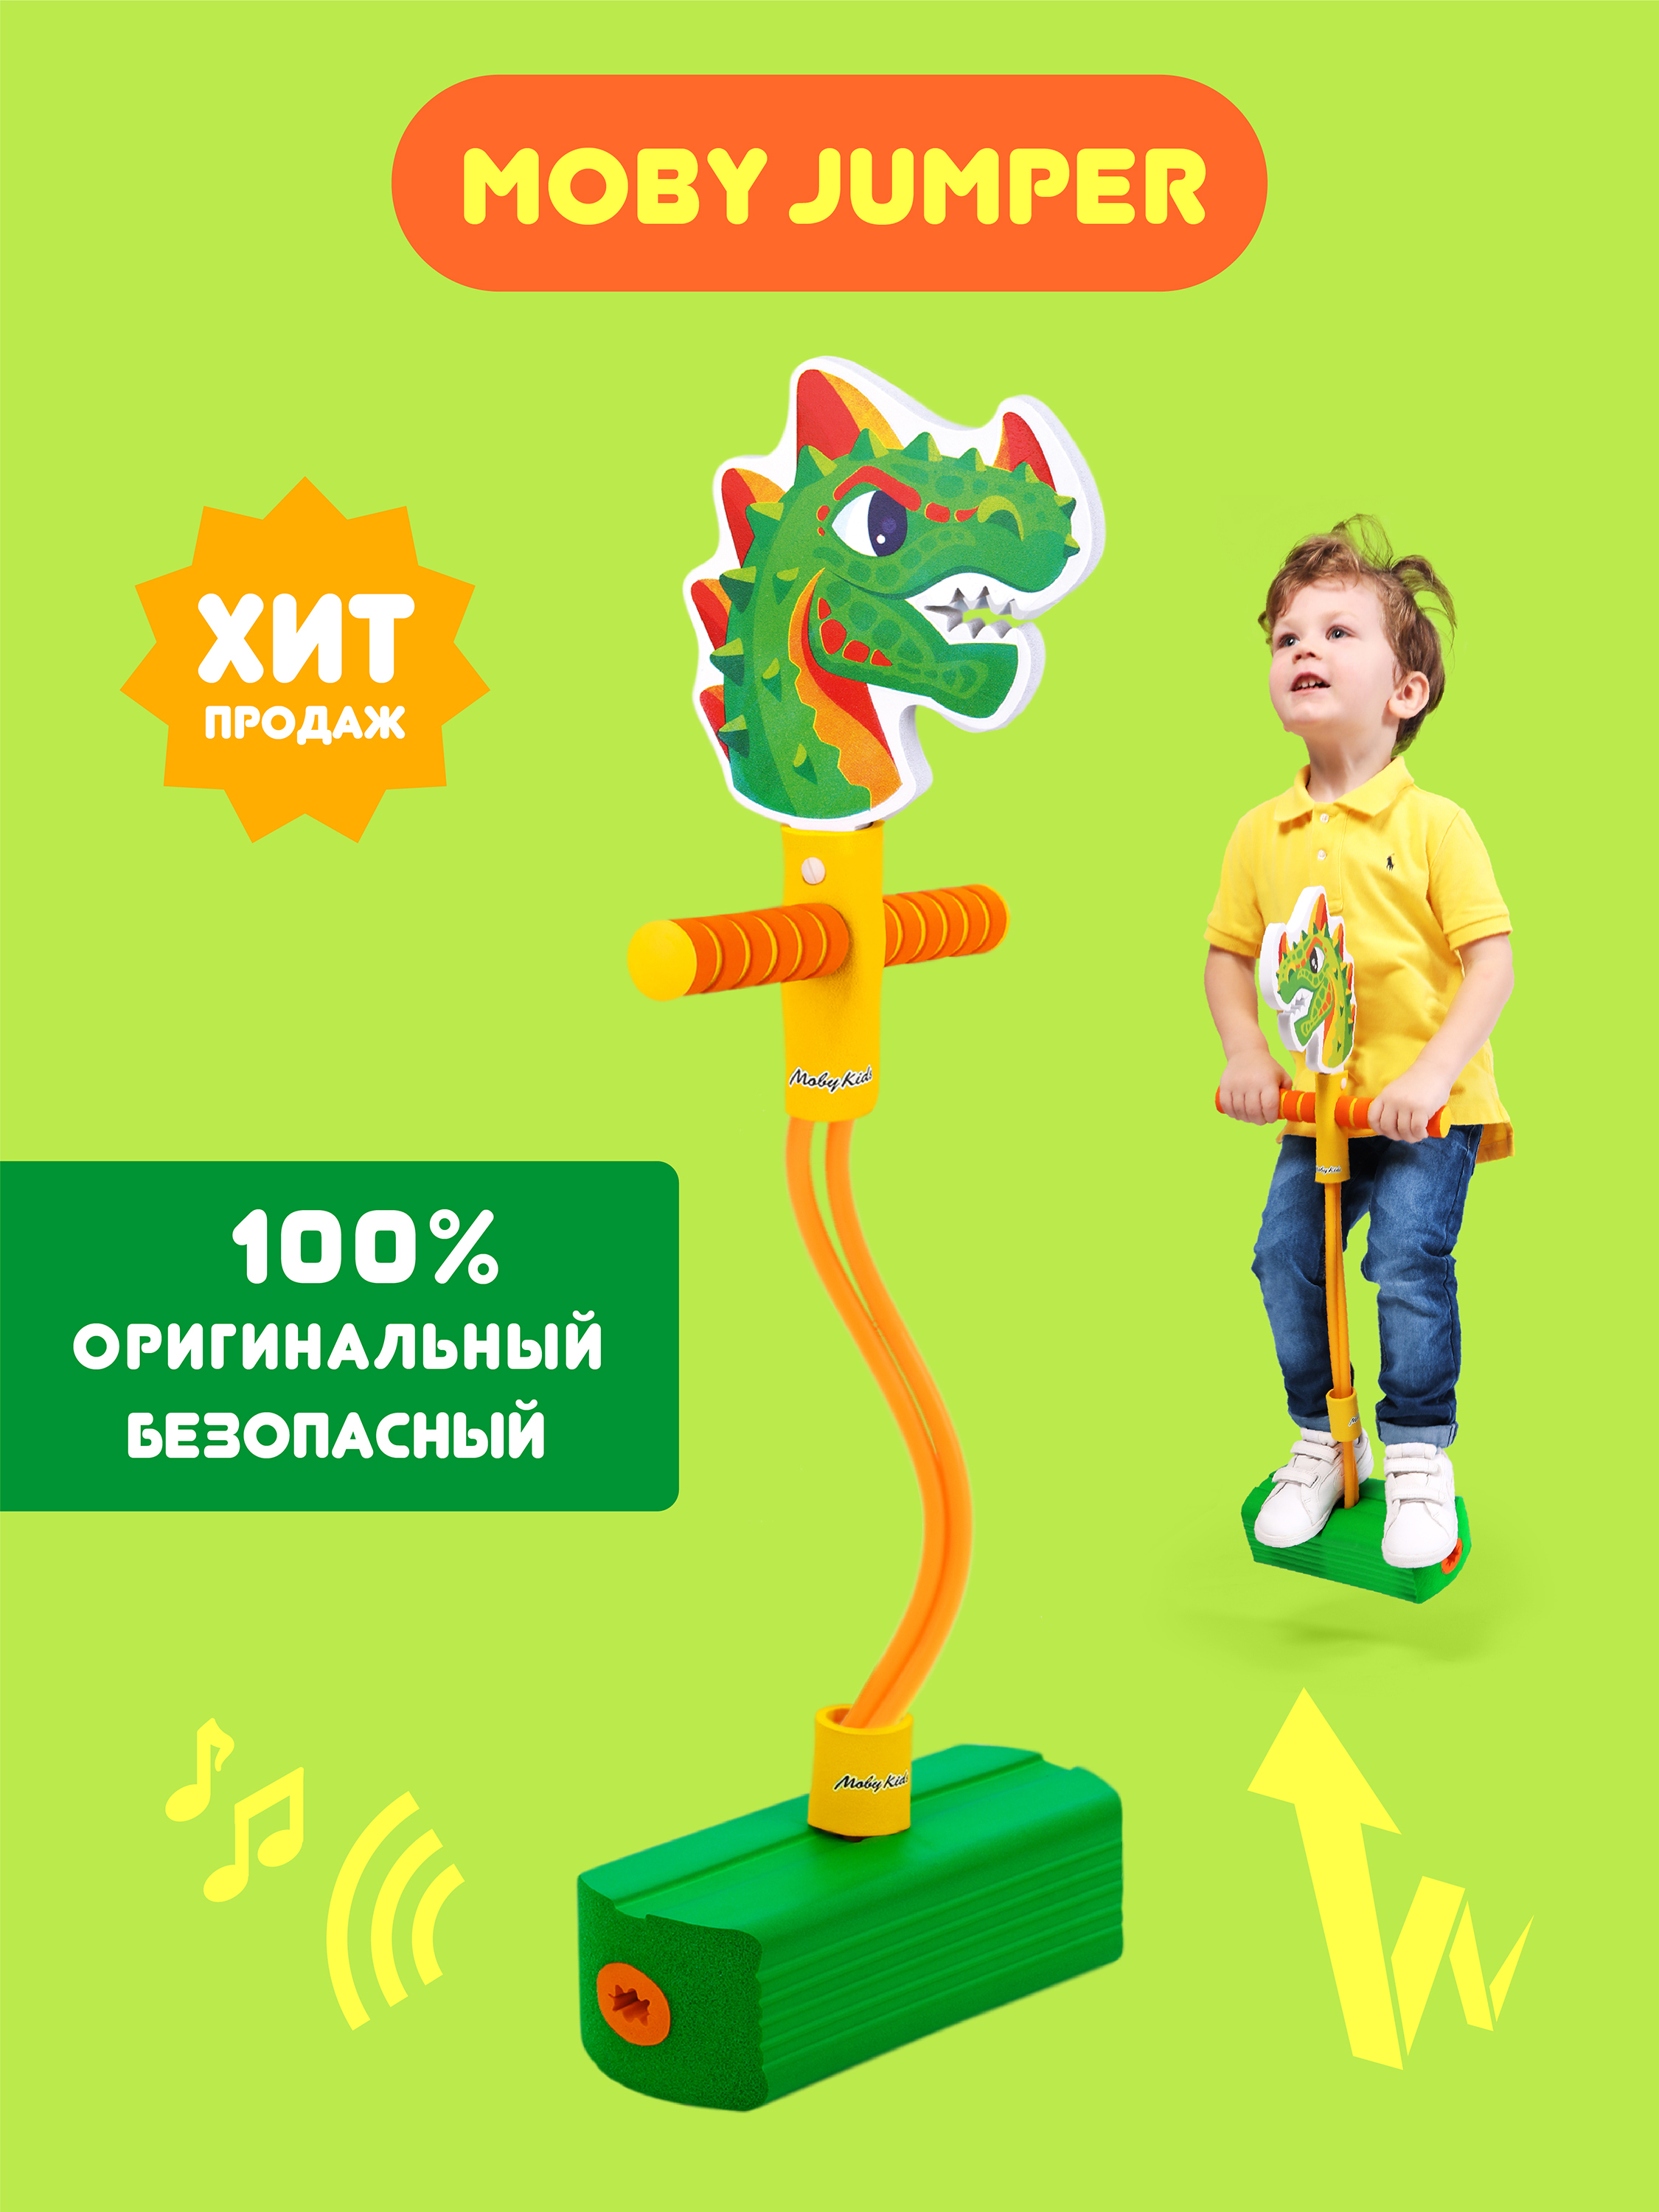 

Тренажер для прыжков MobyJumper Дино Moby Kids, прыгун, мобиджампер, со звуком, 68560, Зеленый, MobyJumper с игрушкой